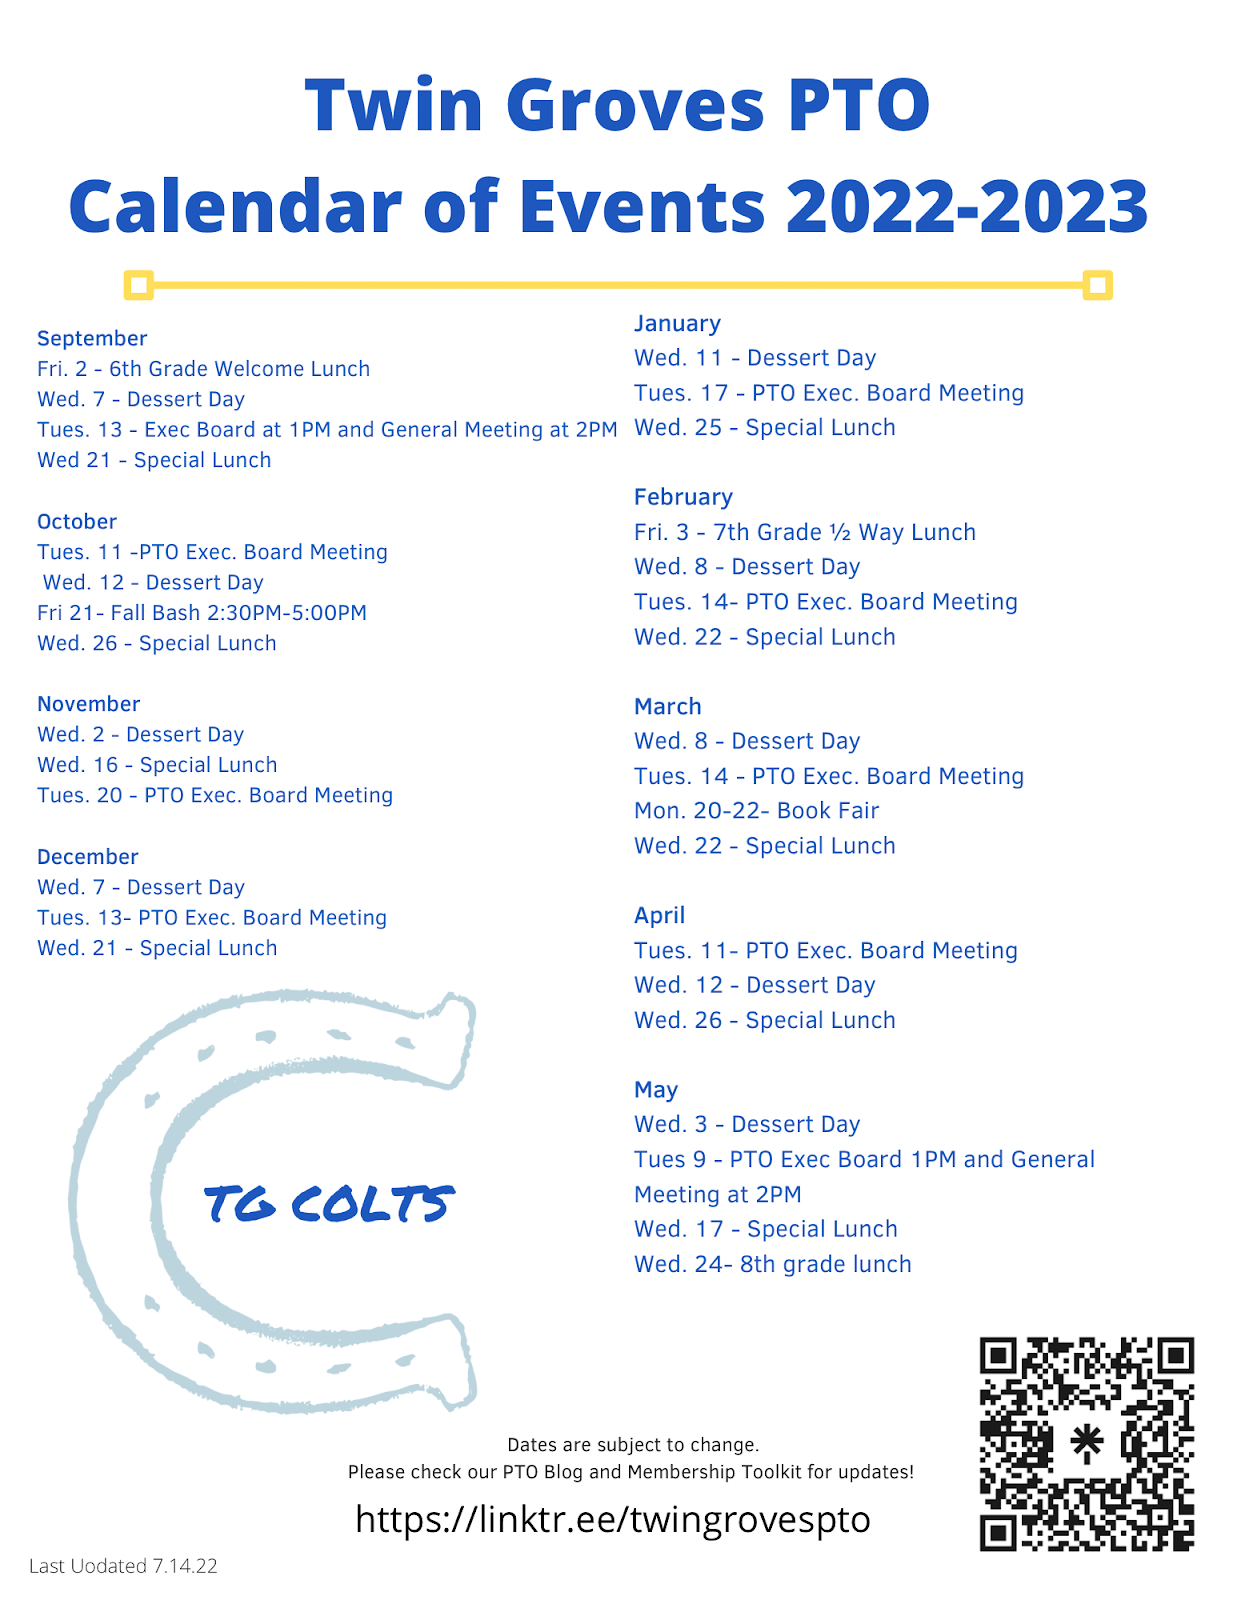 TGMS PTO Calendar of Events 2022-23